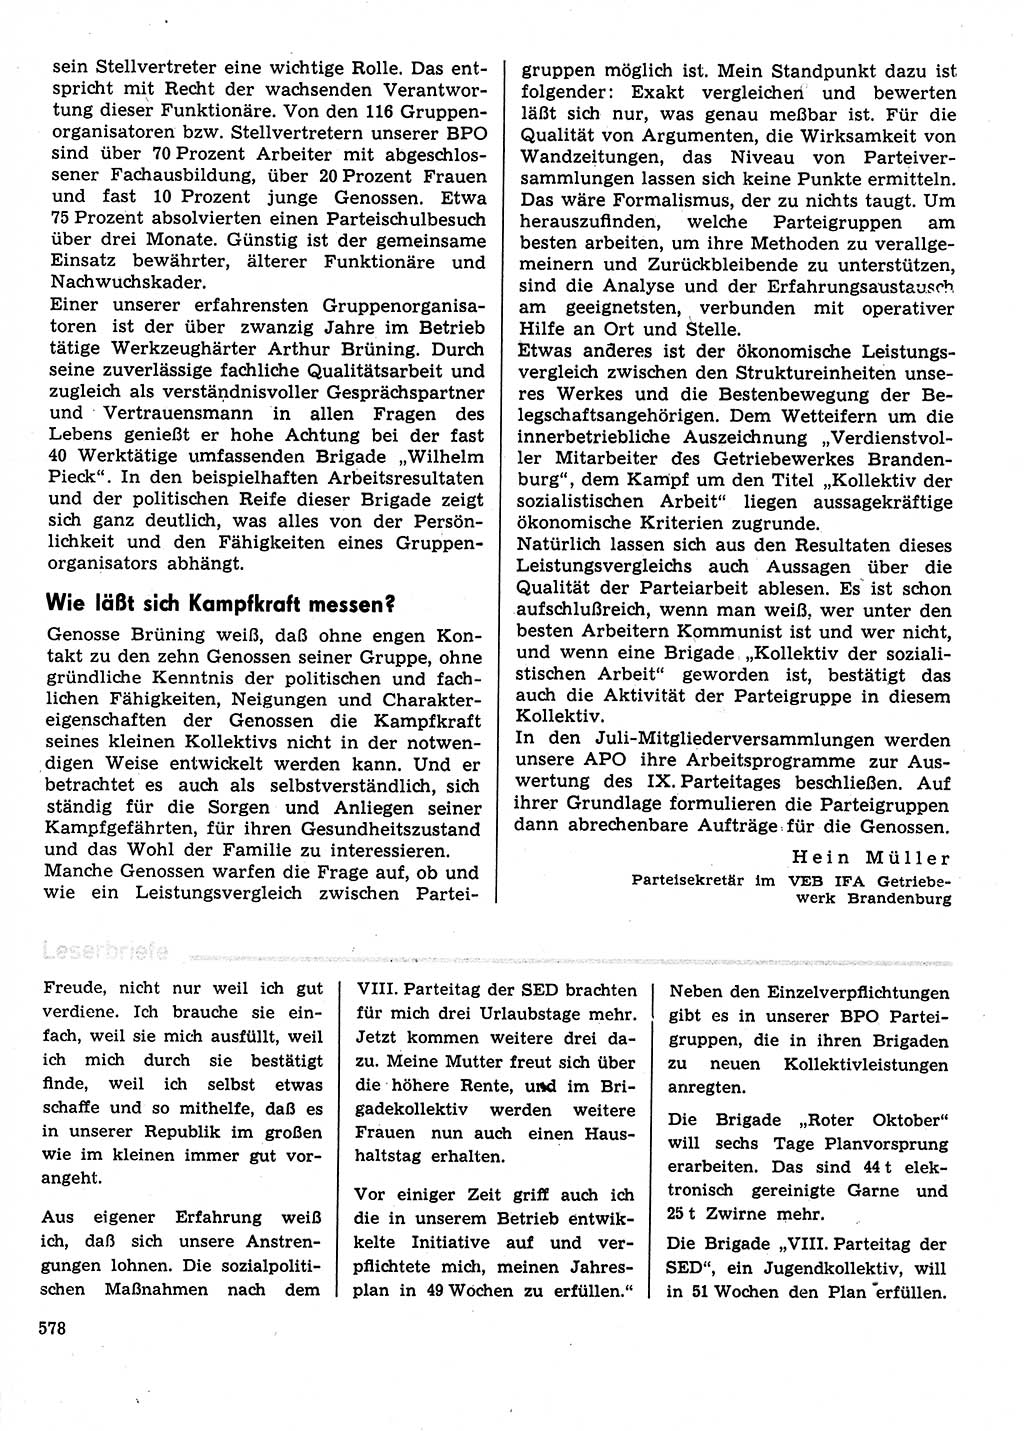 Neuer Weg (NW), Organ des Zentralkomitees (ZK) der SED (Sozialistische Einheitspartei Deutschlands) für Fragen des Parteilebens, 31. Jahrgang [Deutsche Demokratische Republik (DDR)] 1976, Seite 578 (NW ZK SED DDR 1976, S. 578)